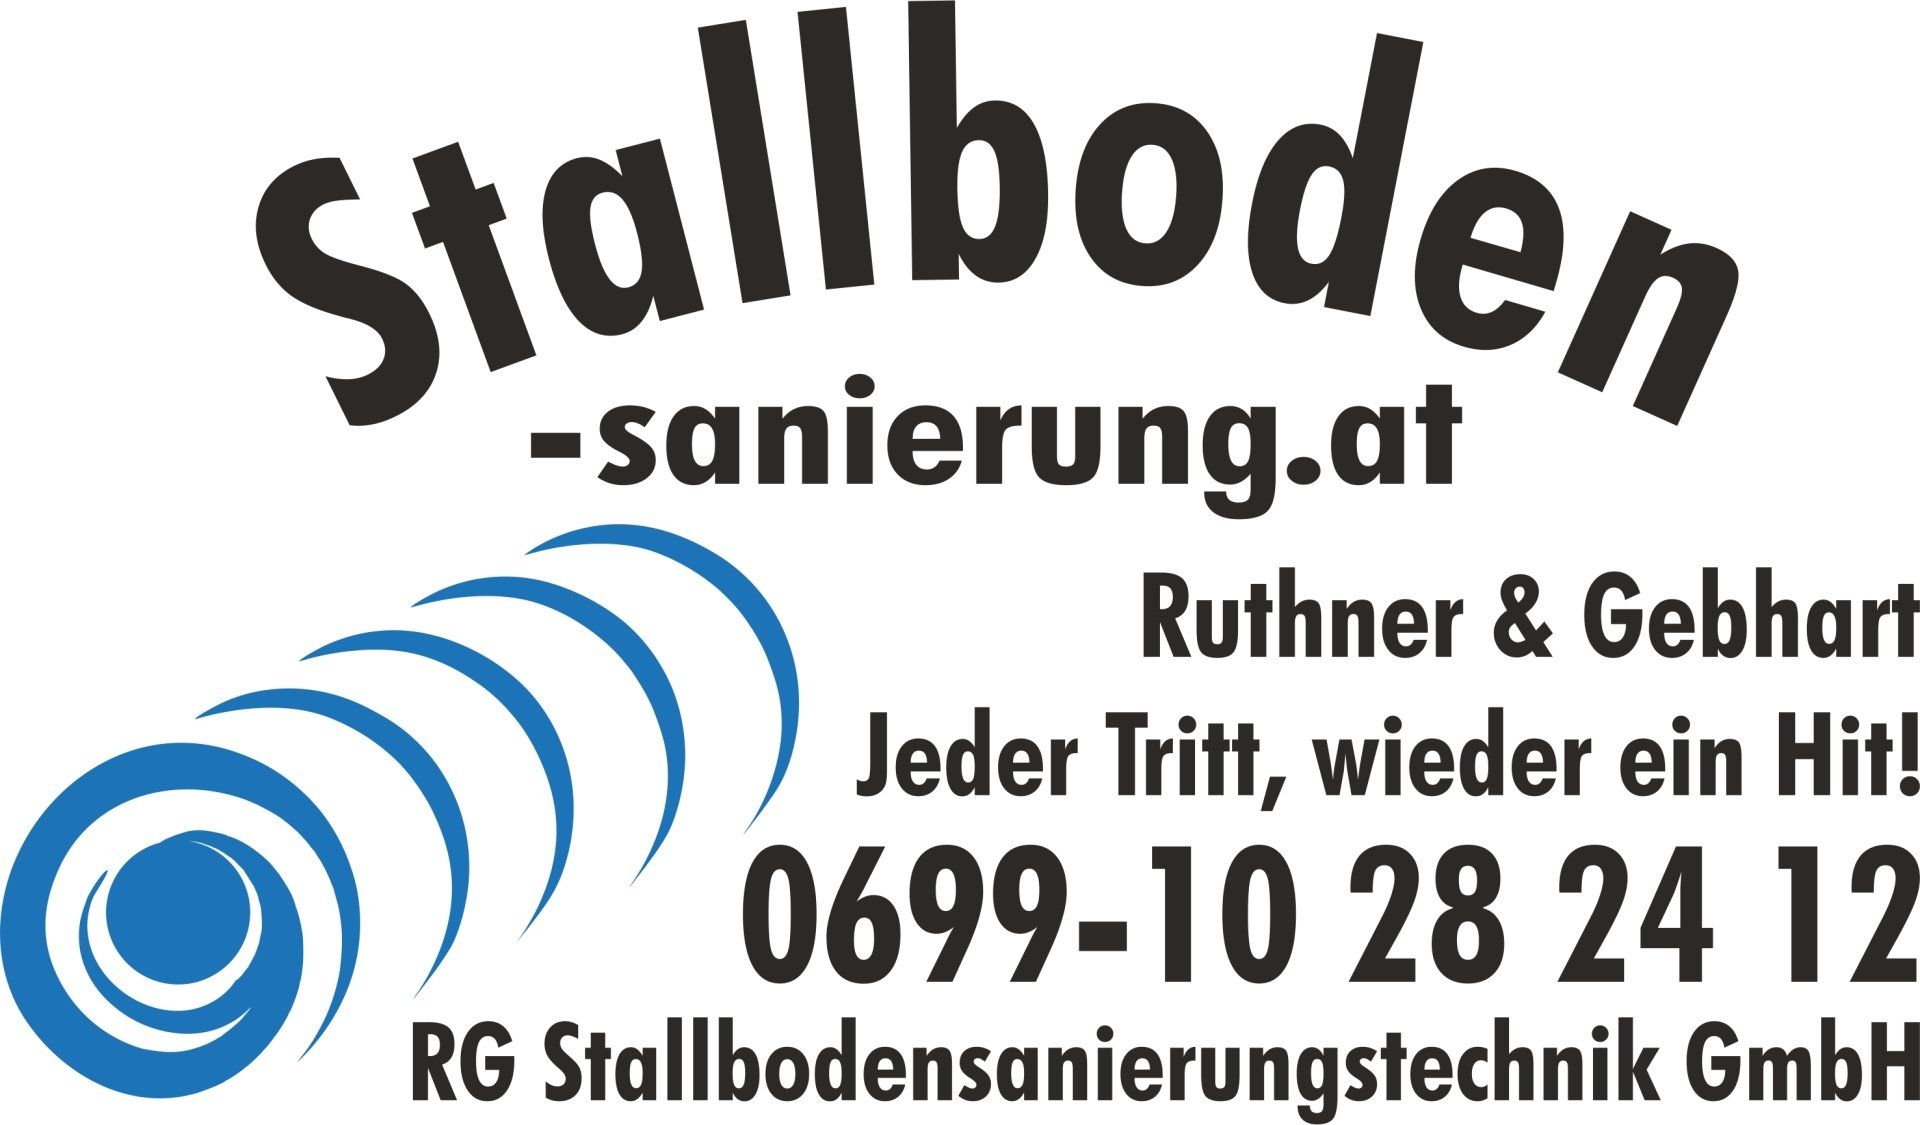 Johann Ruthner - Stallbodensanierung RG-Stallbodensanieurungstechnik GmbH